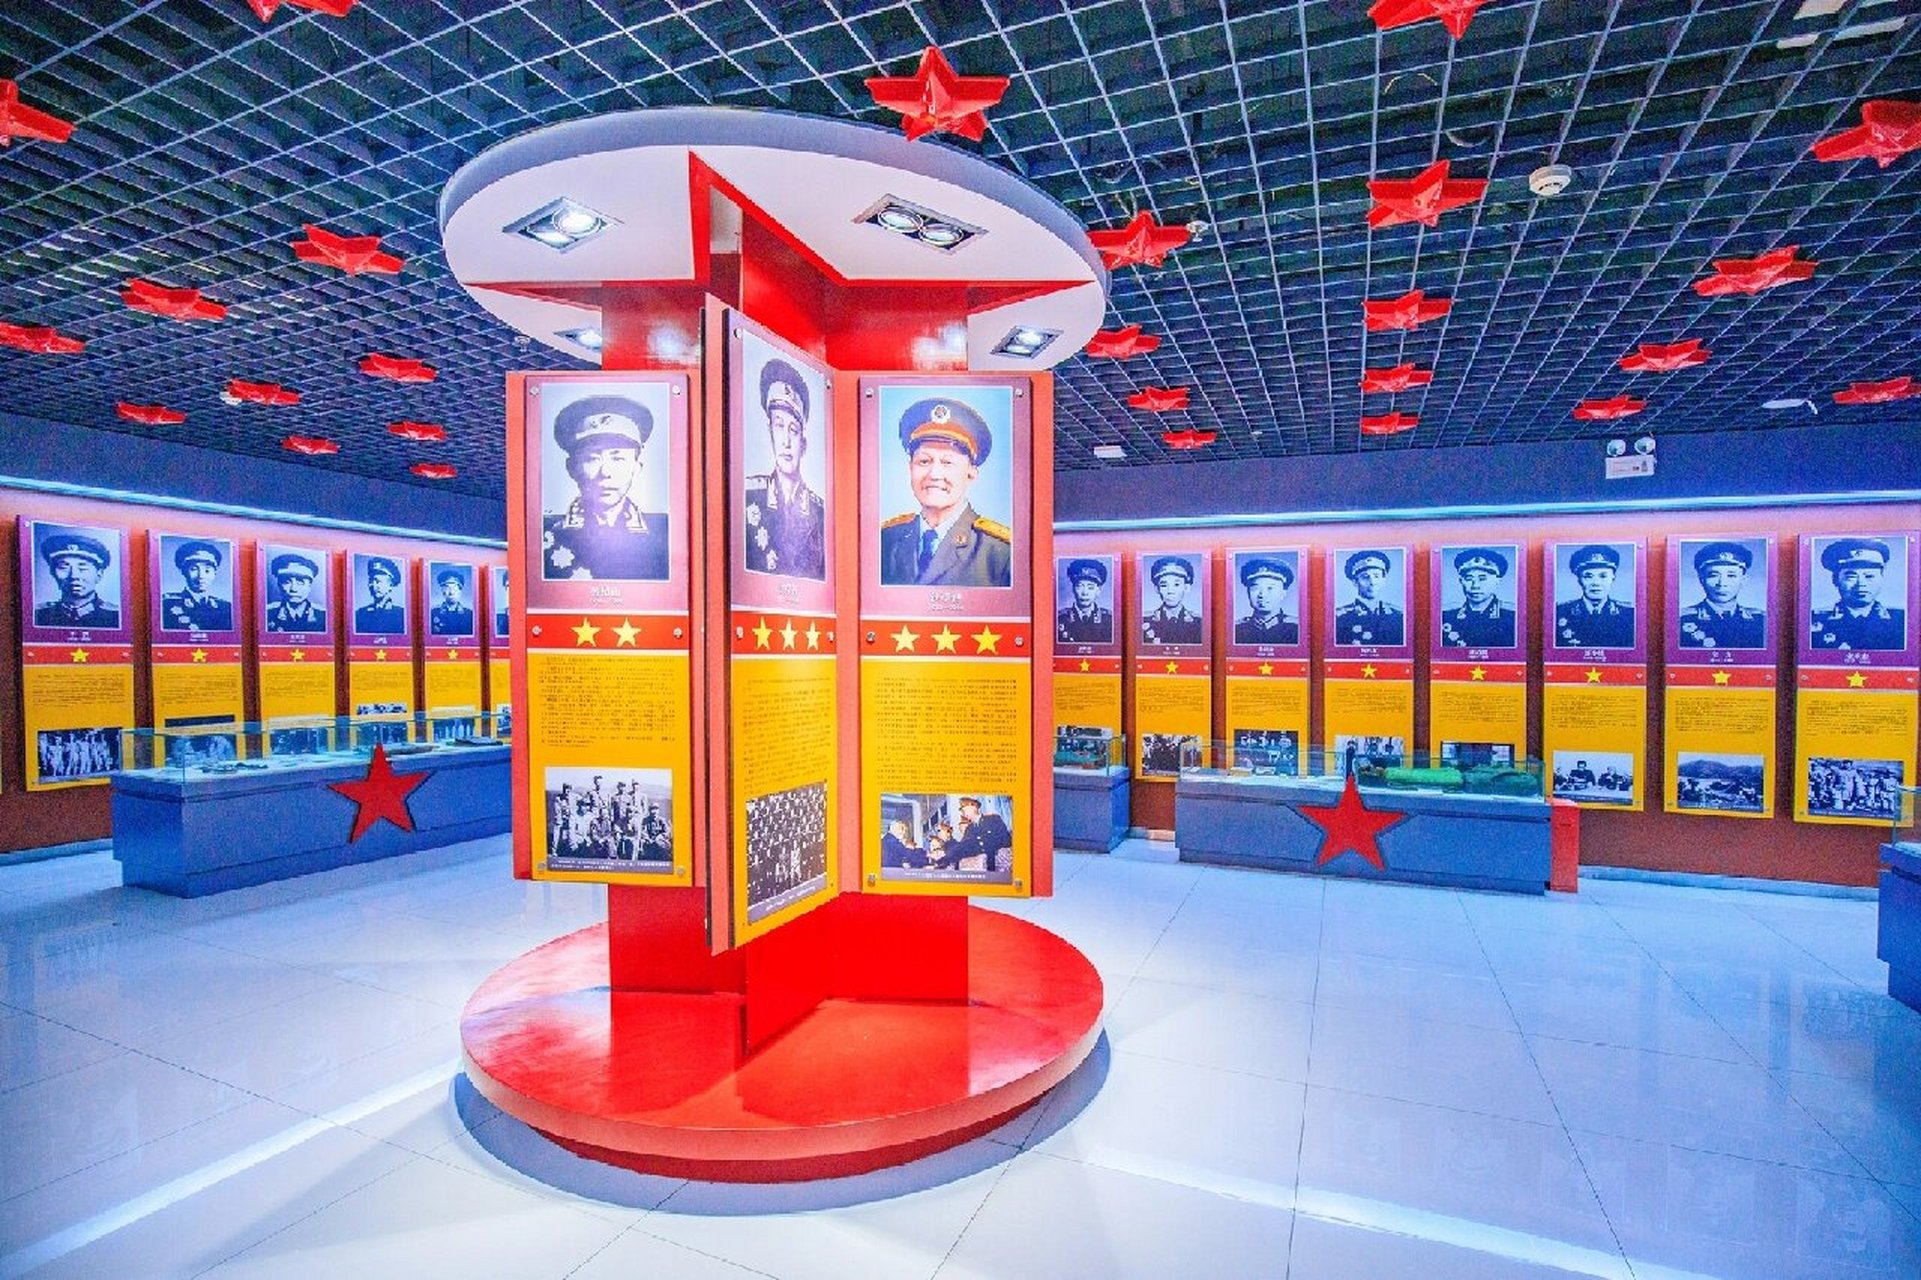 金寨县革命博物馆图片图片